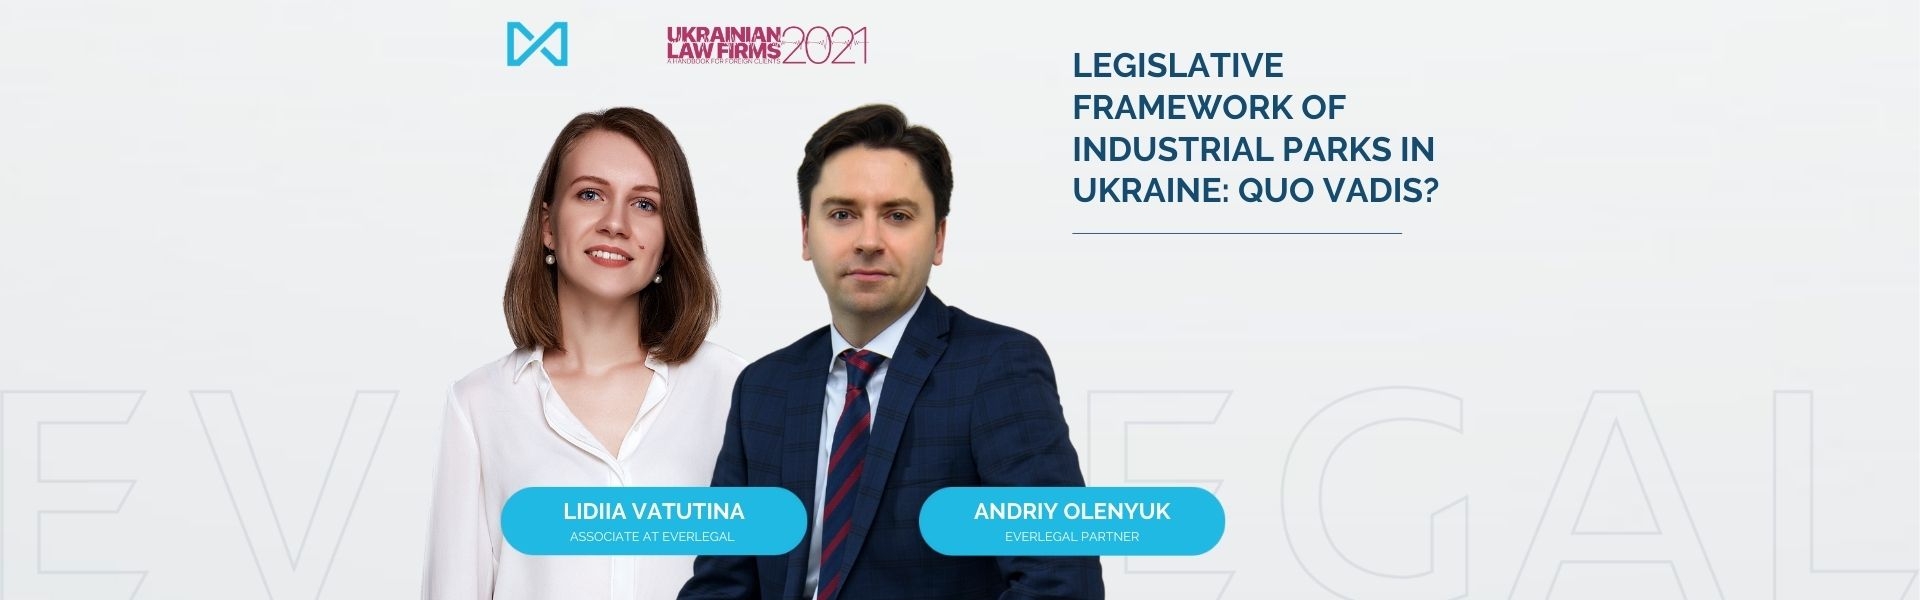 Legislative Framework of Industrial Parks in Ukraine: Quo Vadis?